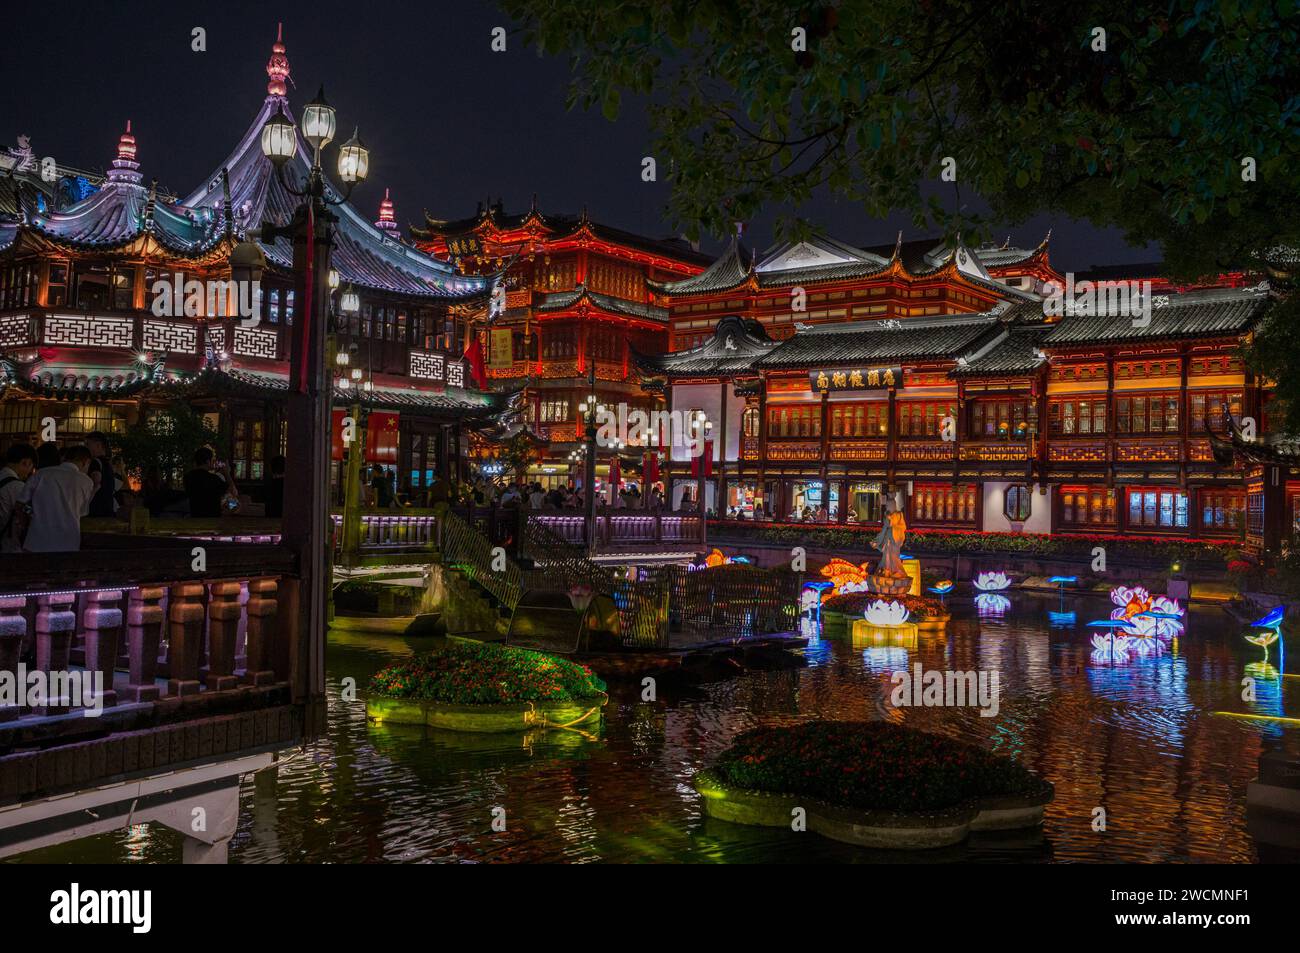 Ein majestätischer chinesischer Palast, beleuchtet gegen den Nachthimmel, in der Nähe eines friedlichen Sees in Shanghai Stockfoto